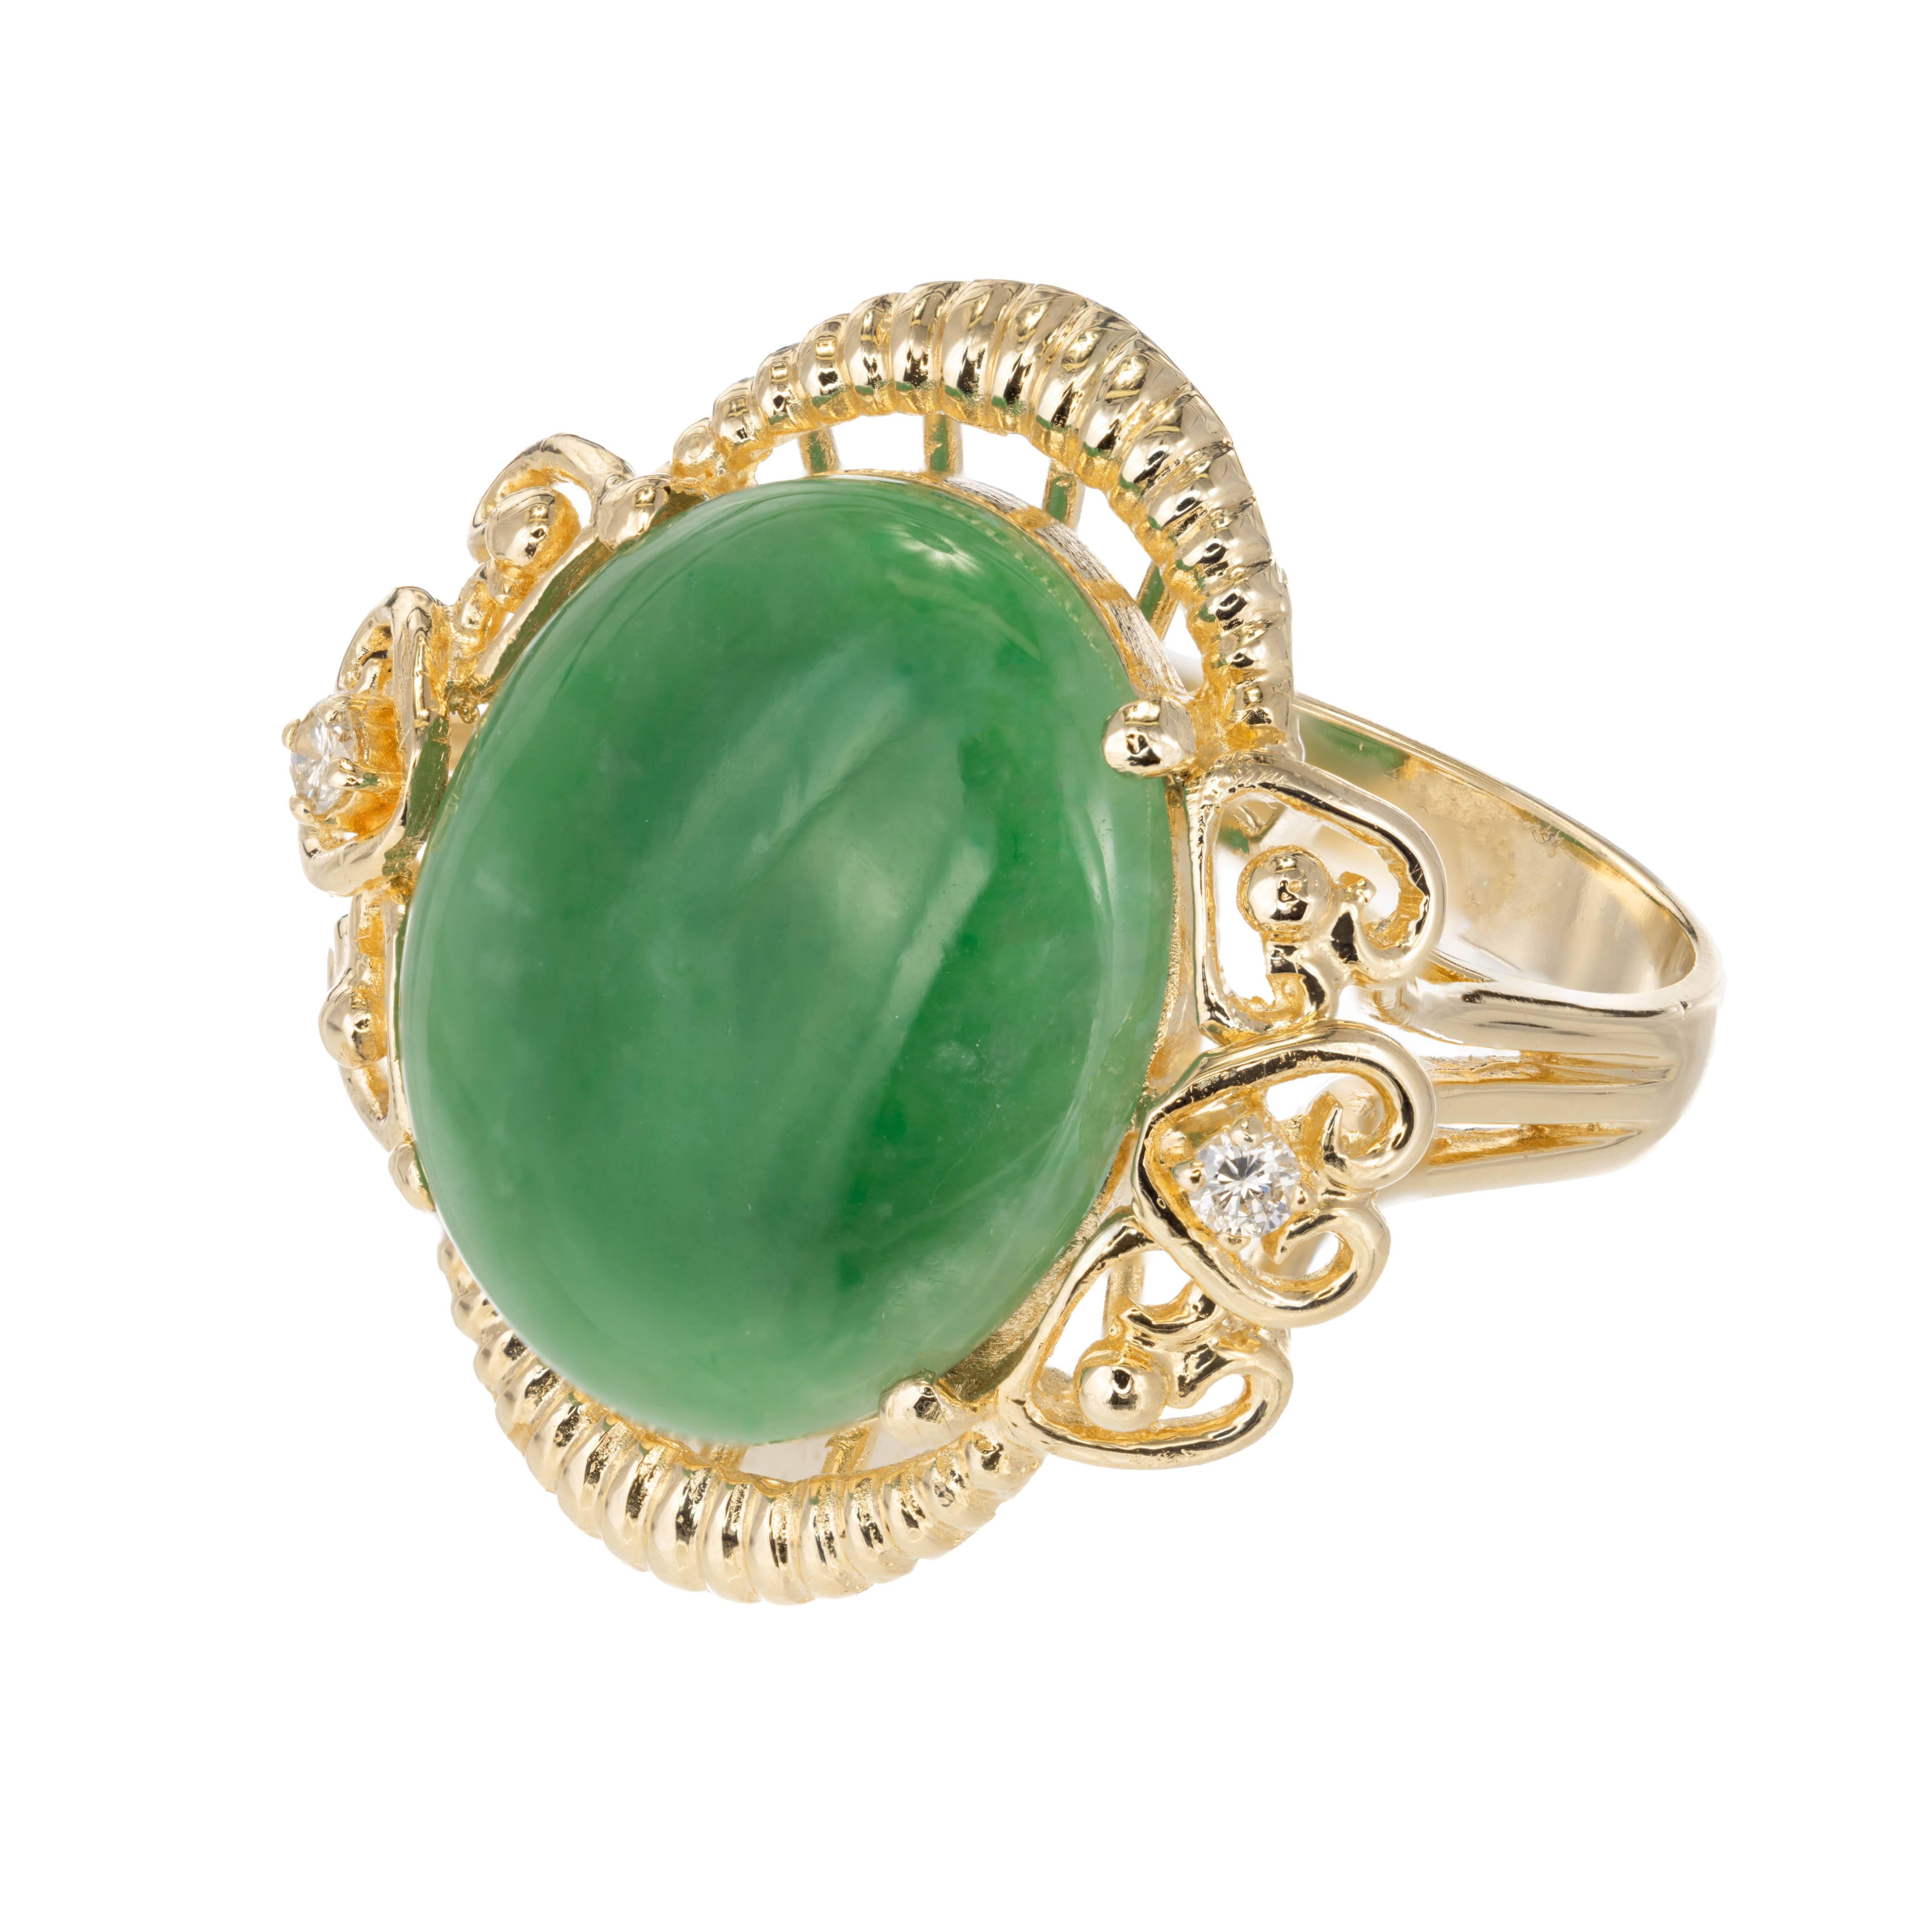 GIA zertifiziert natürliche Farbe Cabochon Jadeit Jade Diamant-Cocktail-Ring CIRCA 1950. 14k Gelbgold Einstellung mit Diamant-Akzenten. Gut poliert und durchscheinend. Polymerimprägnierung zur Verstärkung des Glanzes. Ein dauerhaftes proprietäres